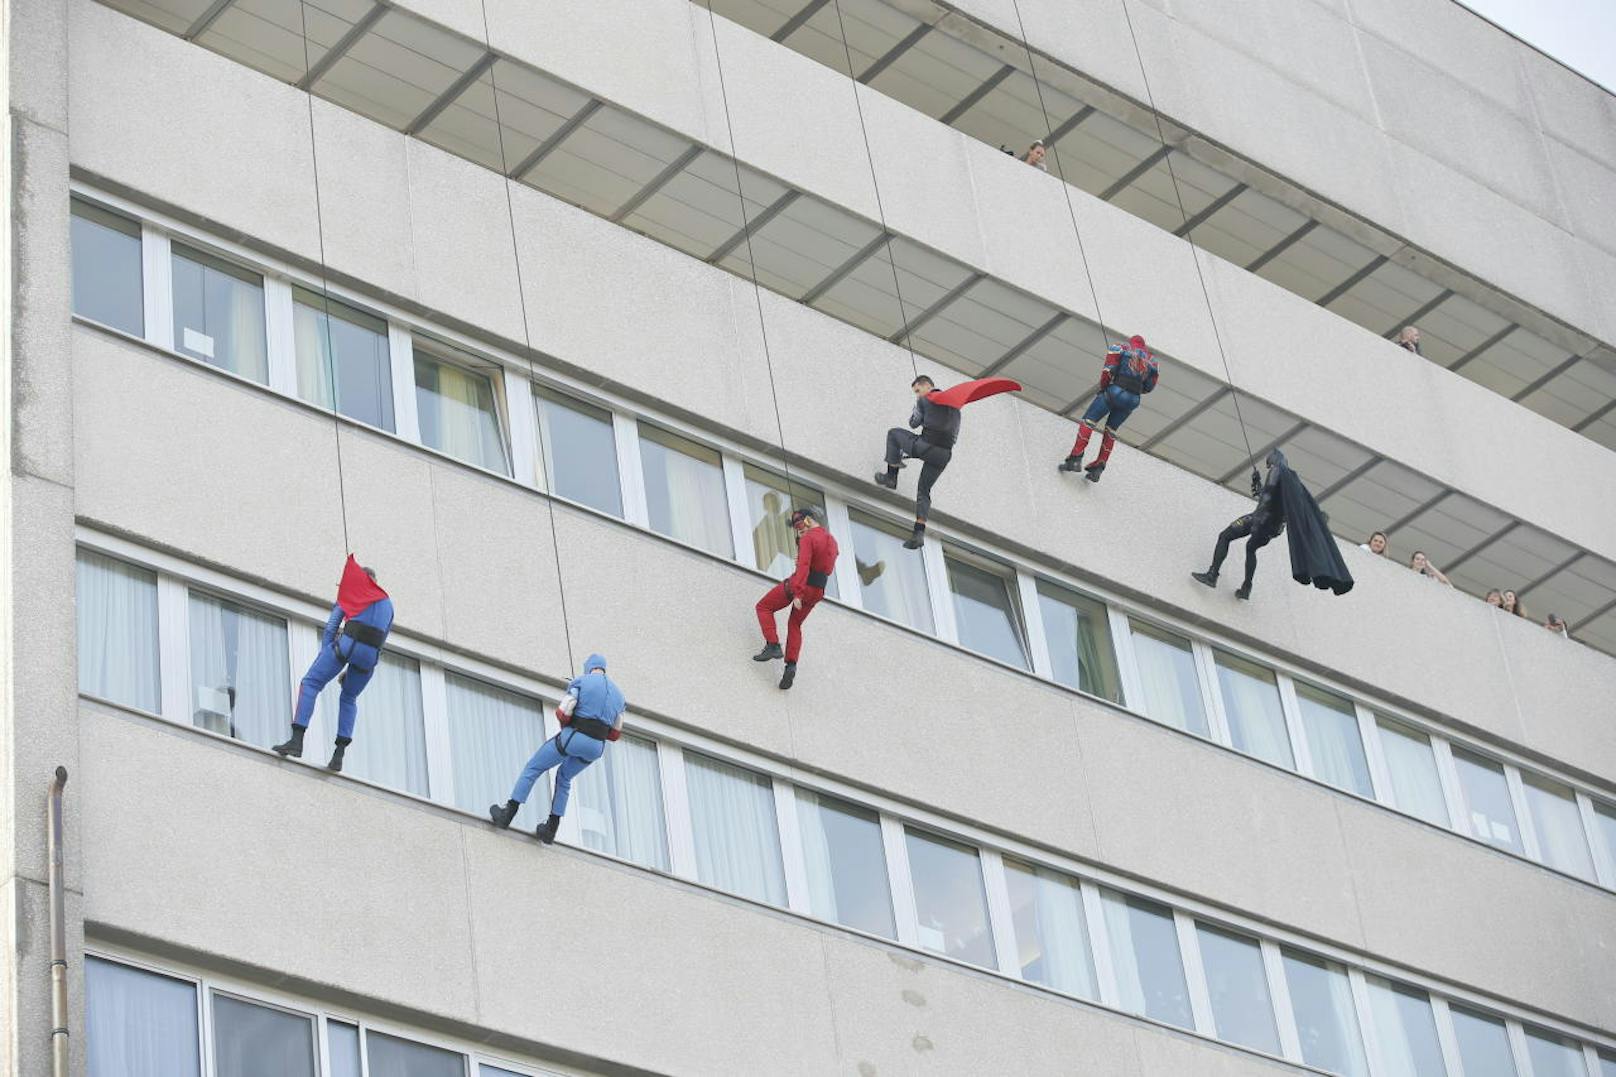 Super! Mitglieder der Polizeisondereinheit WEGA verkleideten sich als Superhelden, seilten sich vom AKH-Dach in Wien ab und besuchten kleine Patienten im Spital.